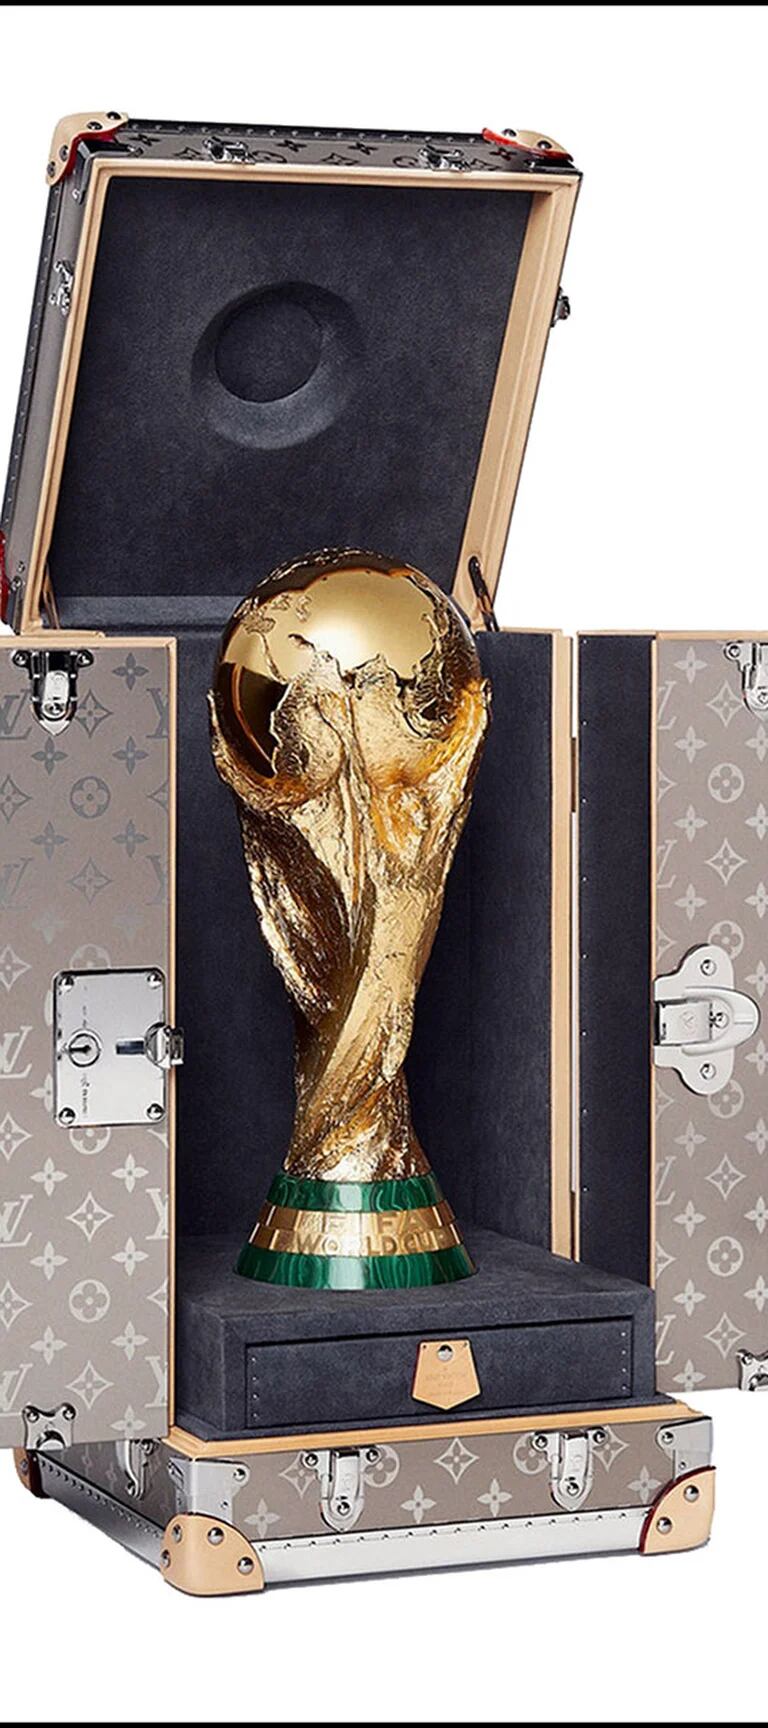 Estuche Louis Vuitton Copa FIFA Mundial 2014 02 - Marca de Gol